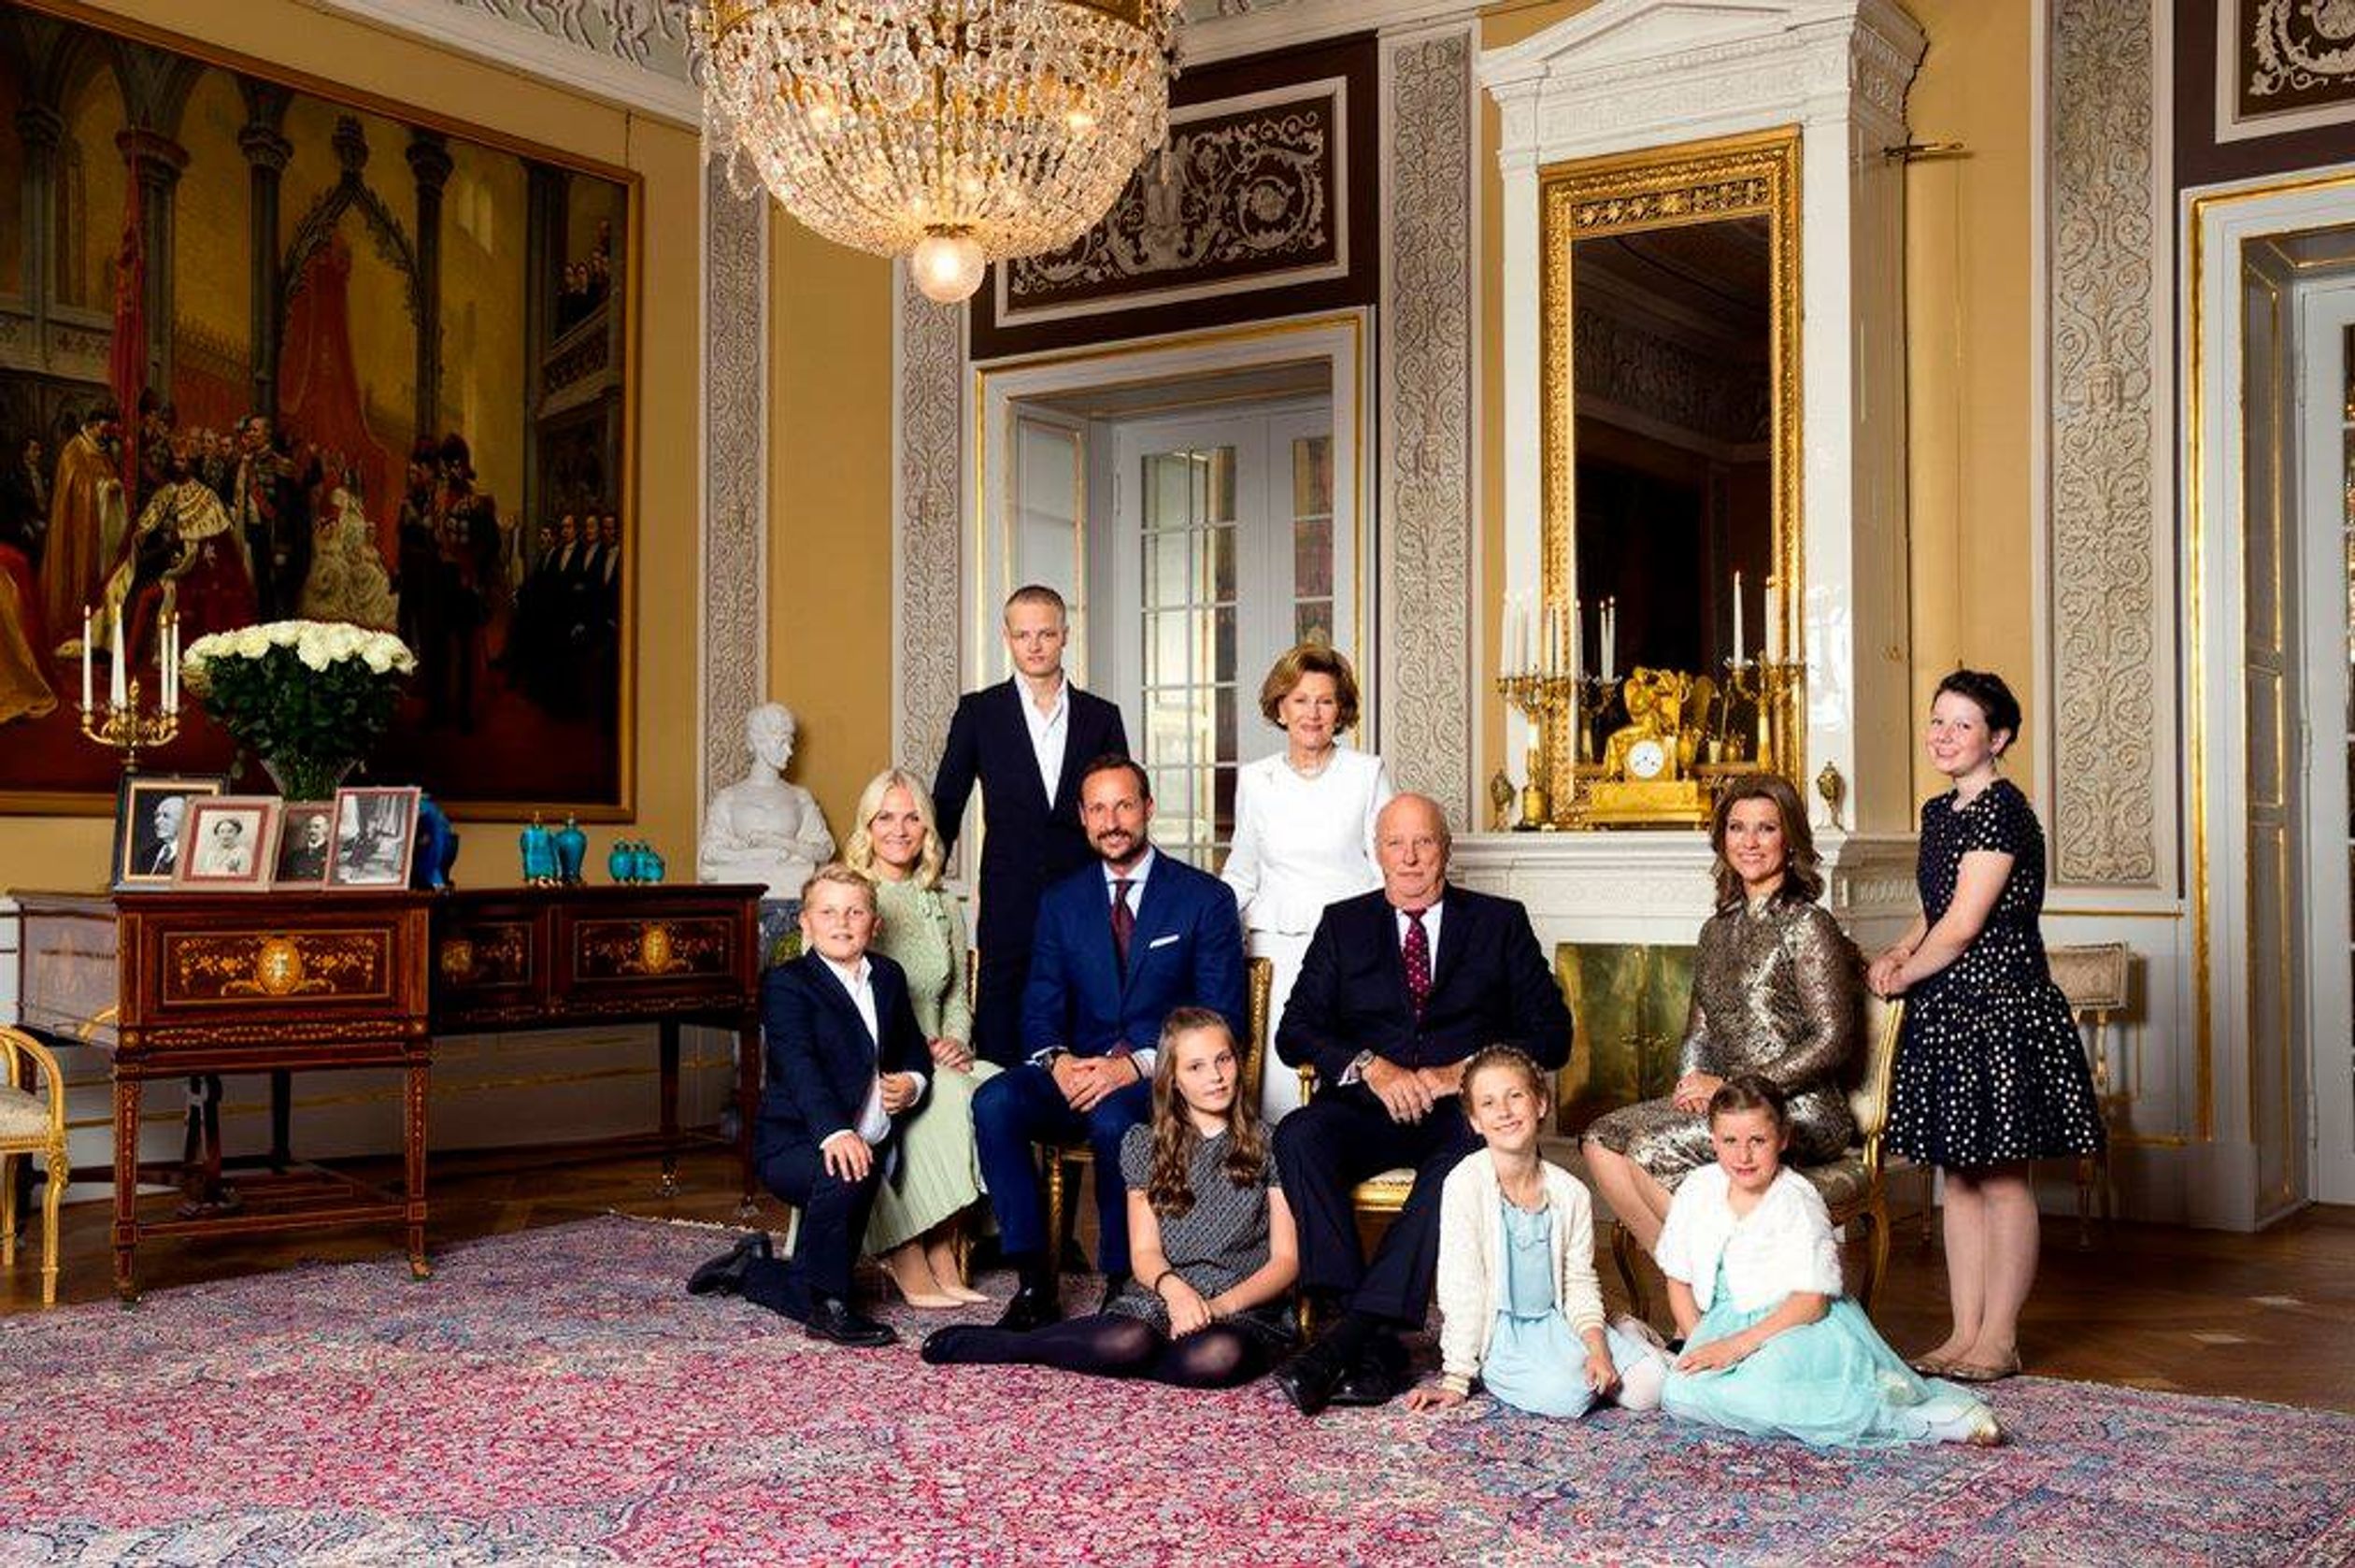 Noorse-koninklijke-familie_01.jpg